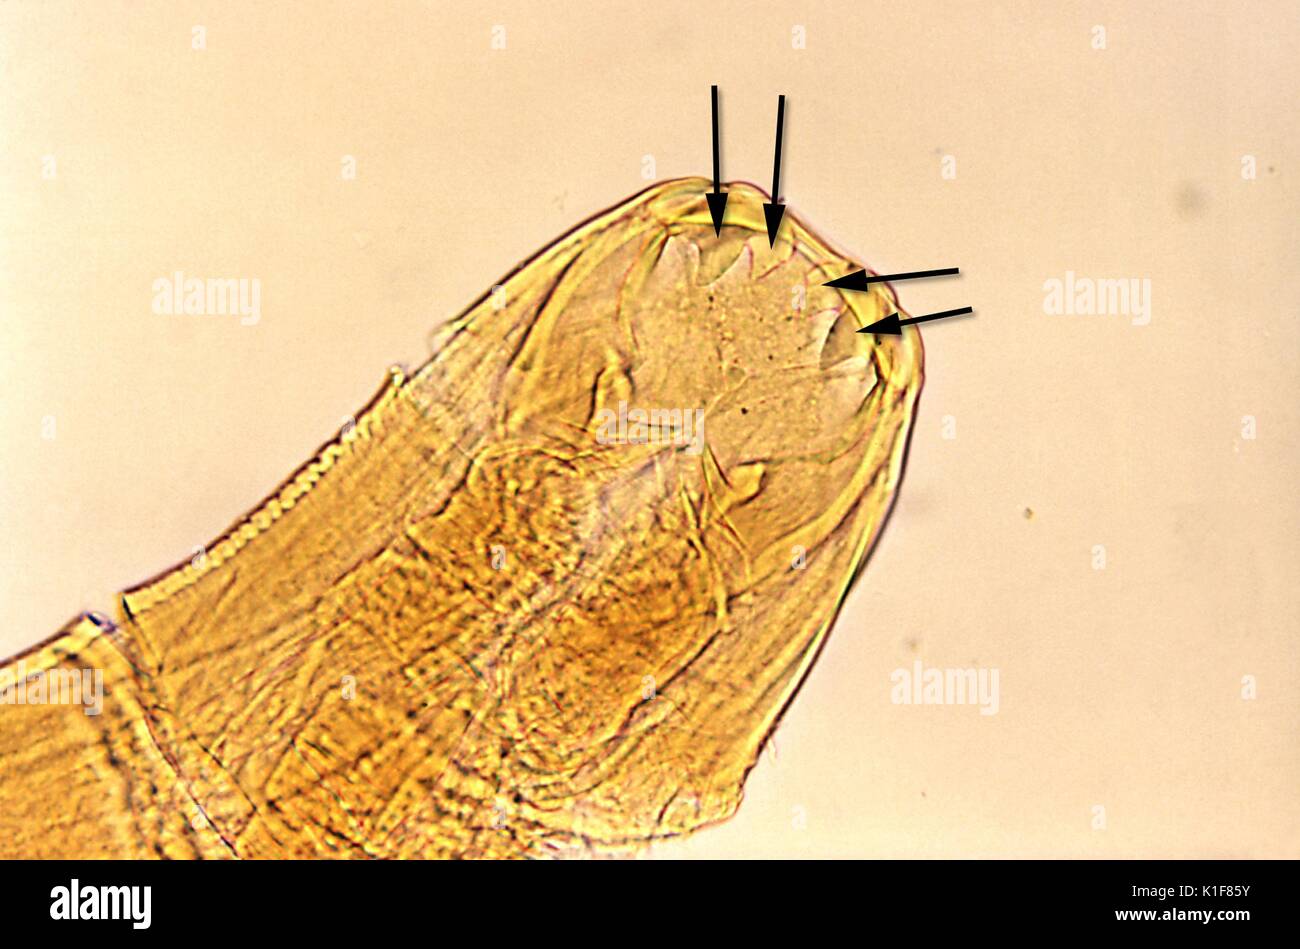 Questa micrografia non colorate rivela la Ancylostoma duodenale hookworm di parti di bocca, Mag. 125X. Il hookworm utilizza tali spigoli denti di taglio per afferrare saldamente alla parete intestinale, e pur rimanendo fissato in posto, ingerisce l'host?s sangue, ottenendo la sua nutrients in questo modo. Immagine cortesia CDC/Dott. Mae Melvin, 1982. Foto Stock